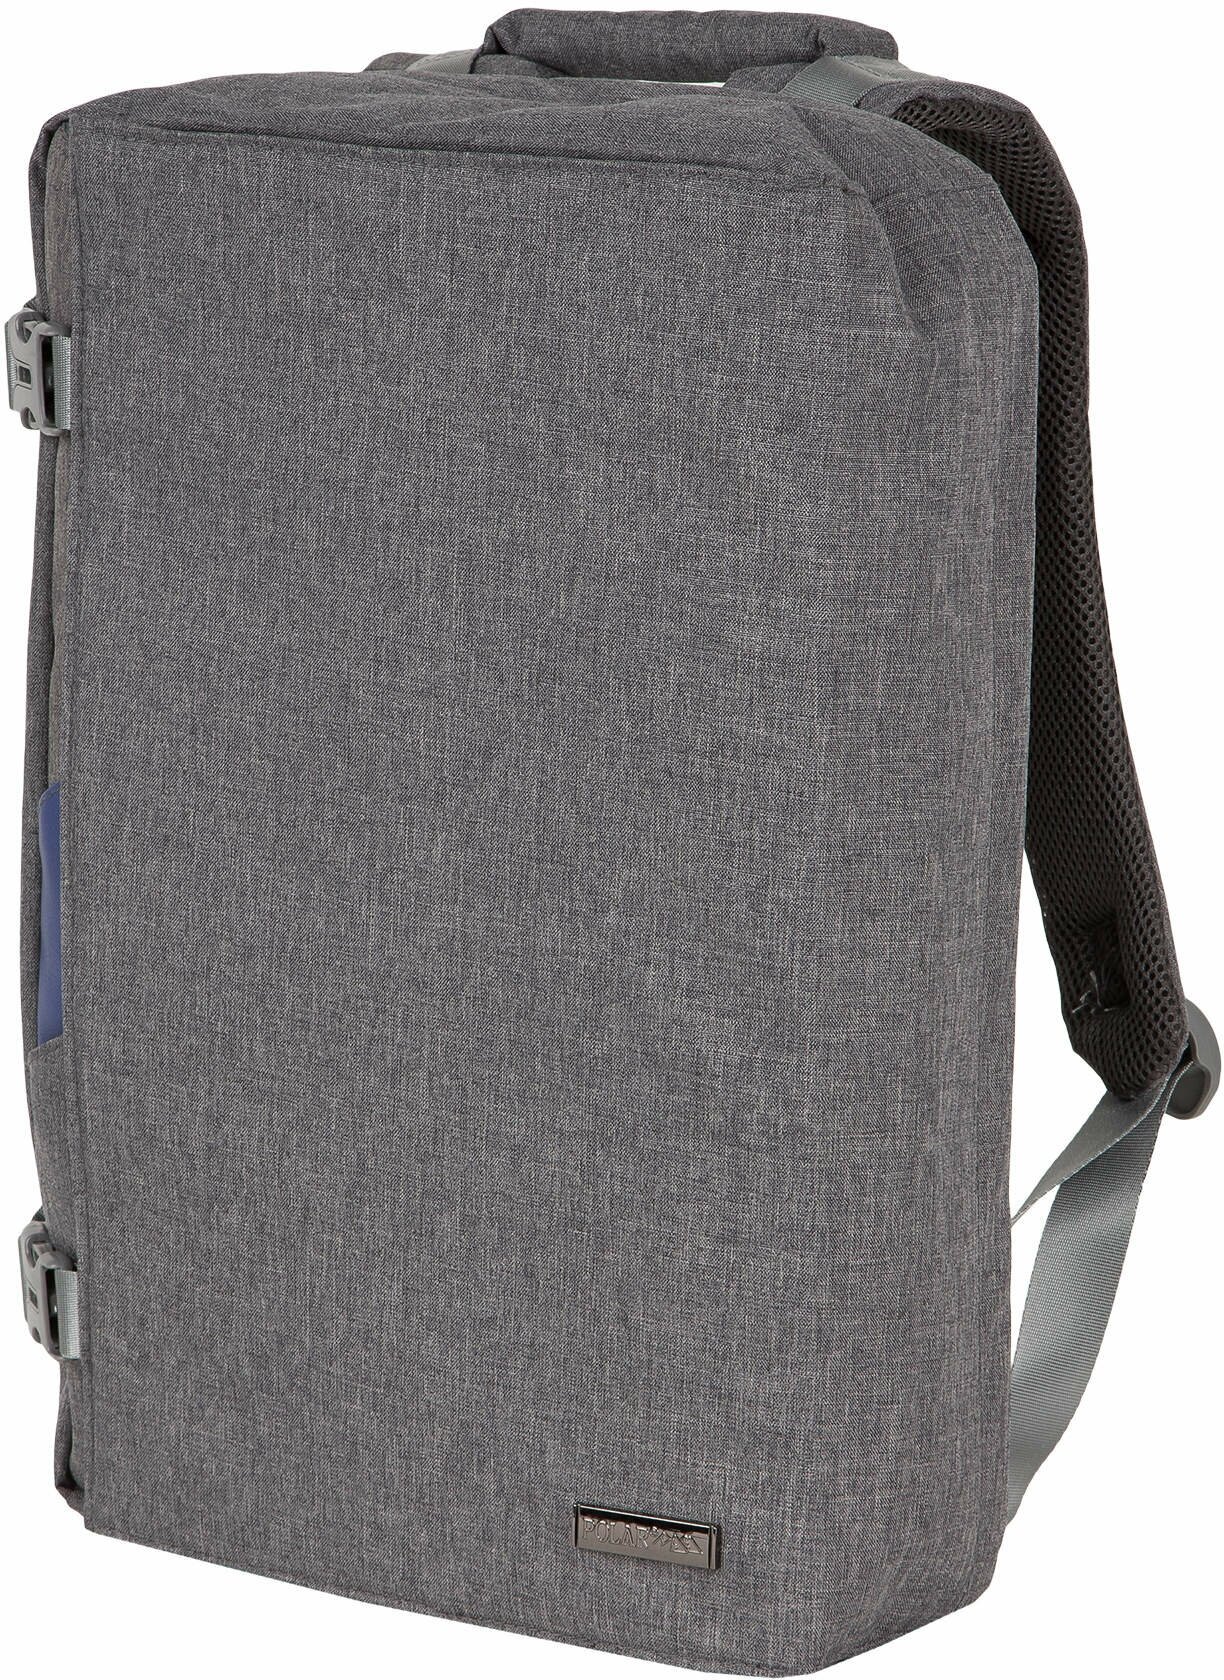 Городской рюкзак Polar П0055 серый